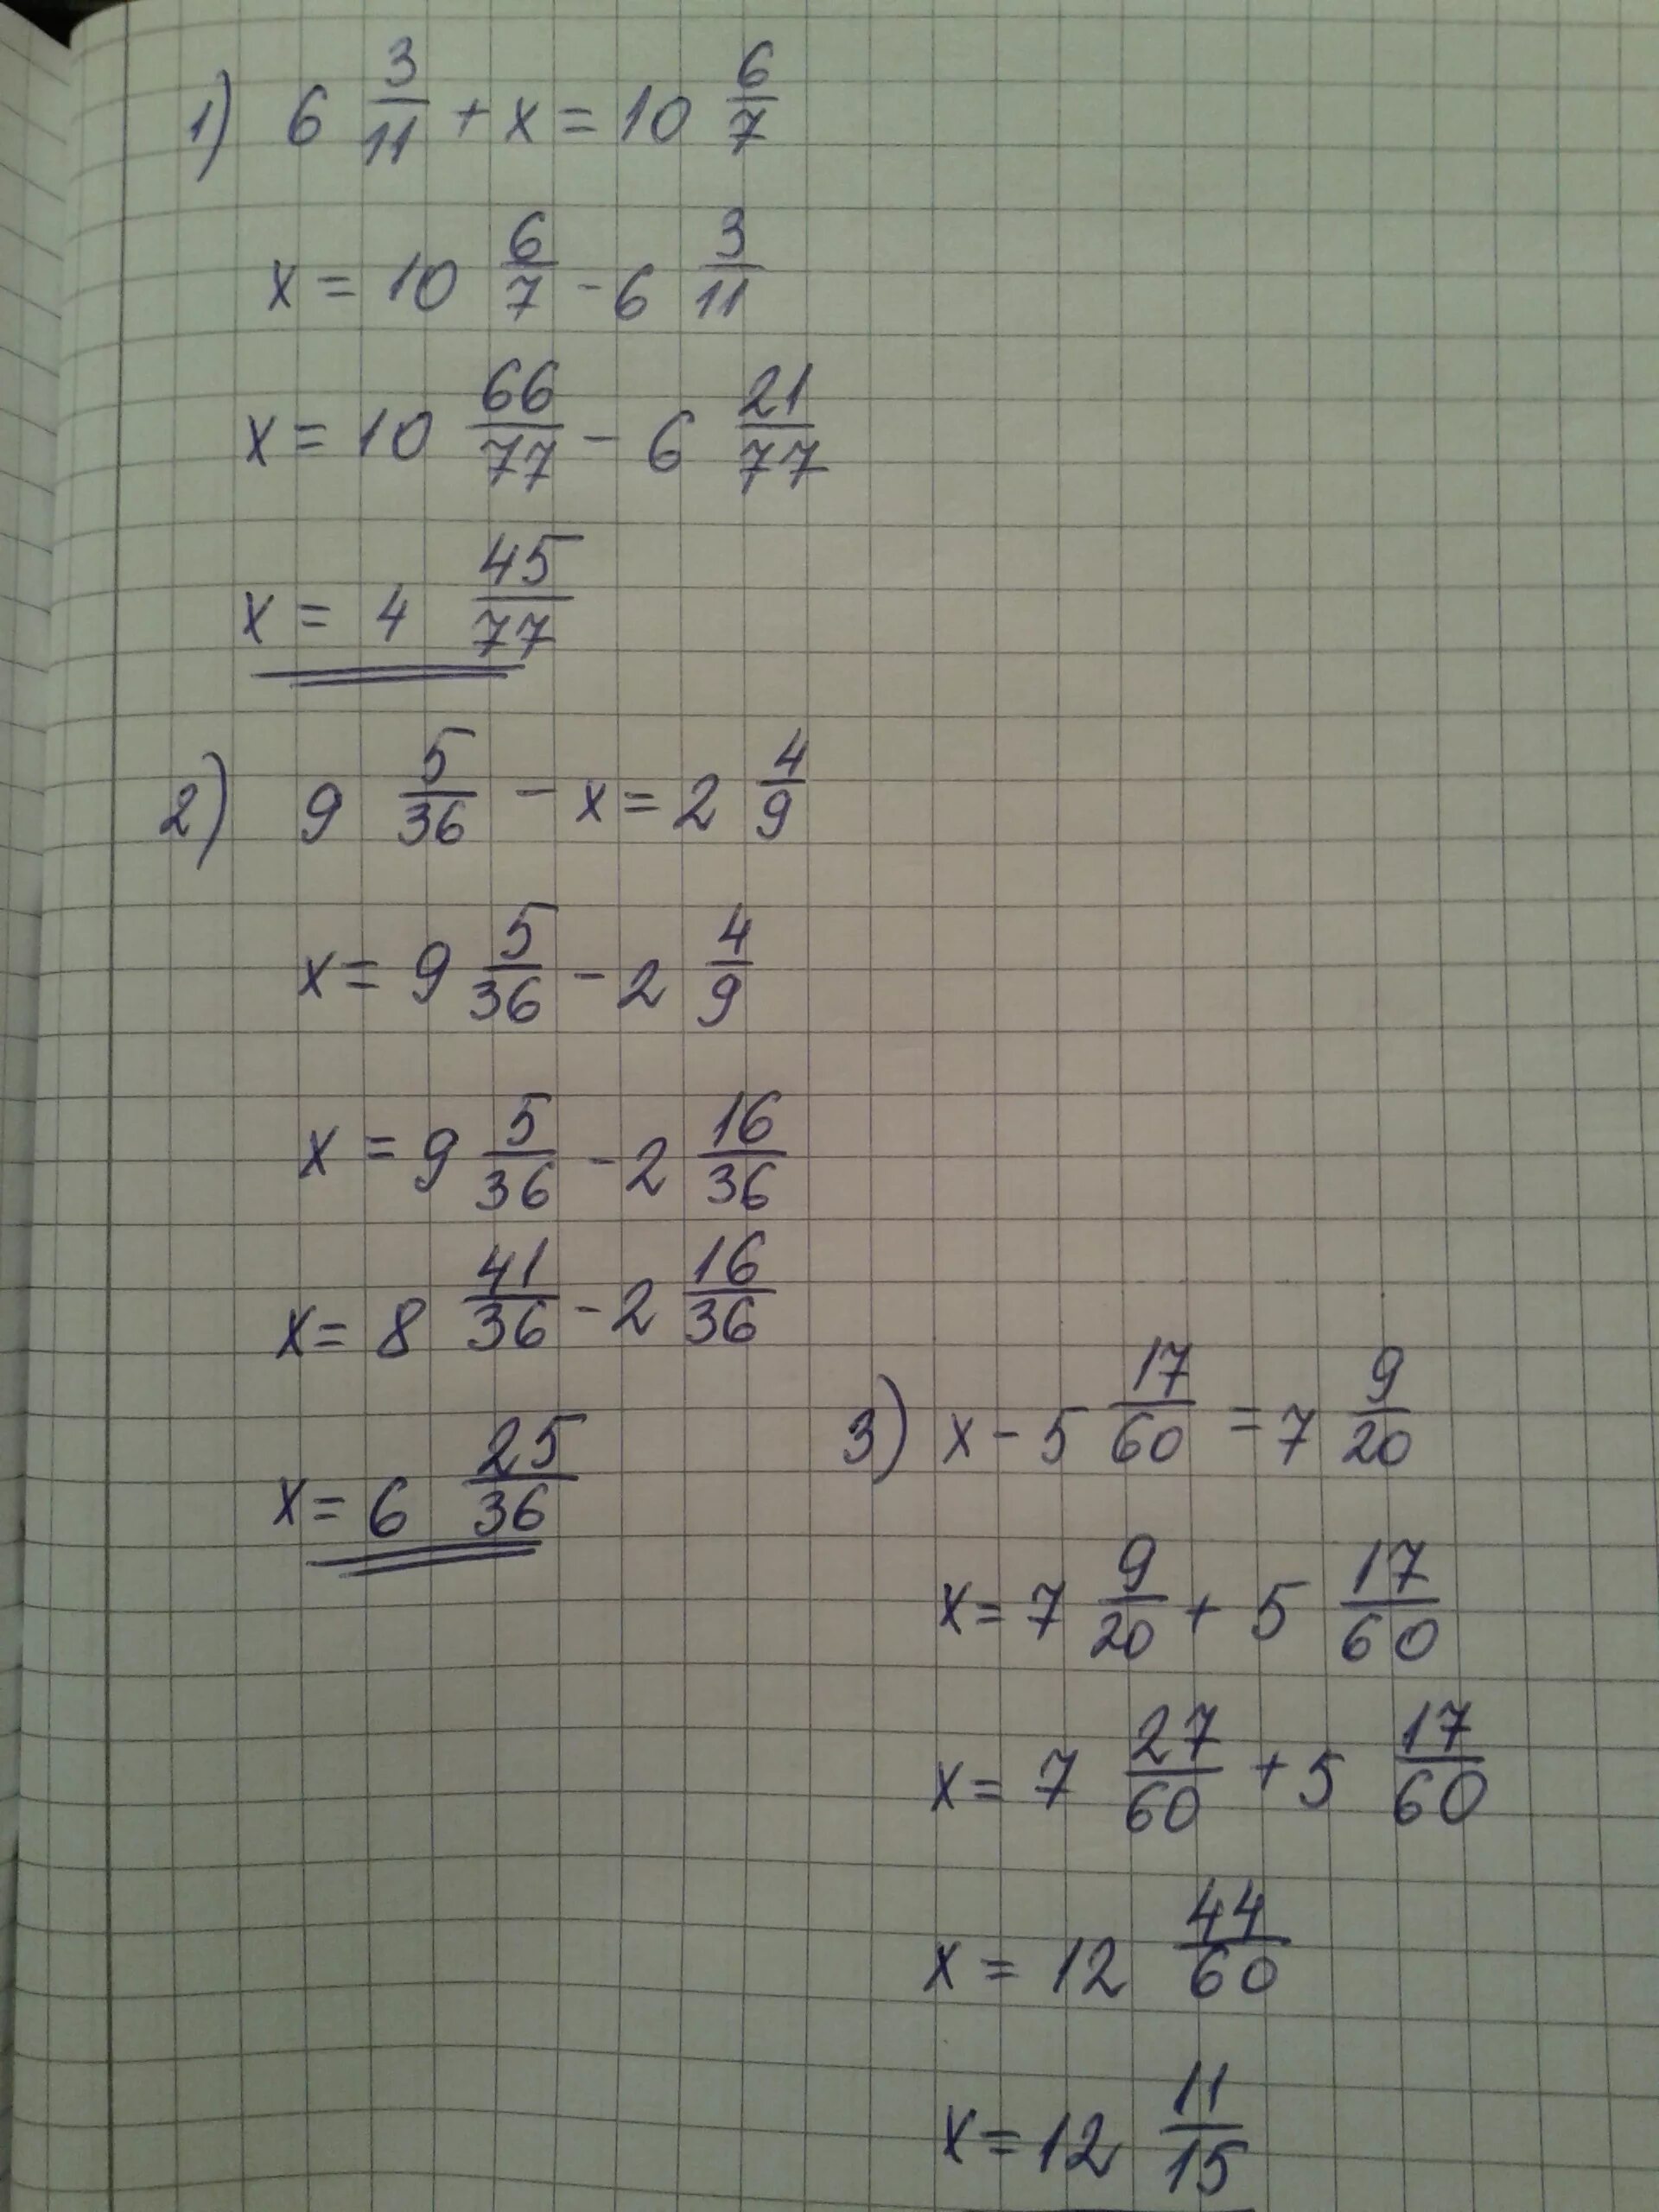 2х 11 3 решение. Х2-11х/6+1/2. Х-3 7/9=5 1/6. 7-2х=9-3х 11х=6+5(2х-1). (Х-1):2-(У-1):6=5/3.